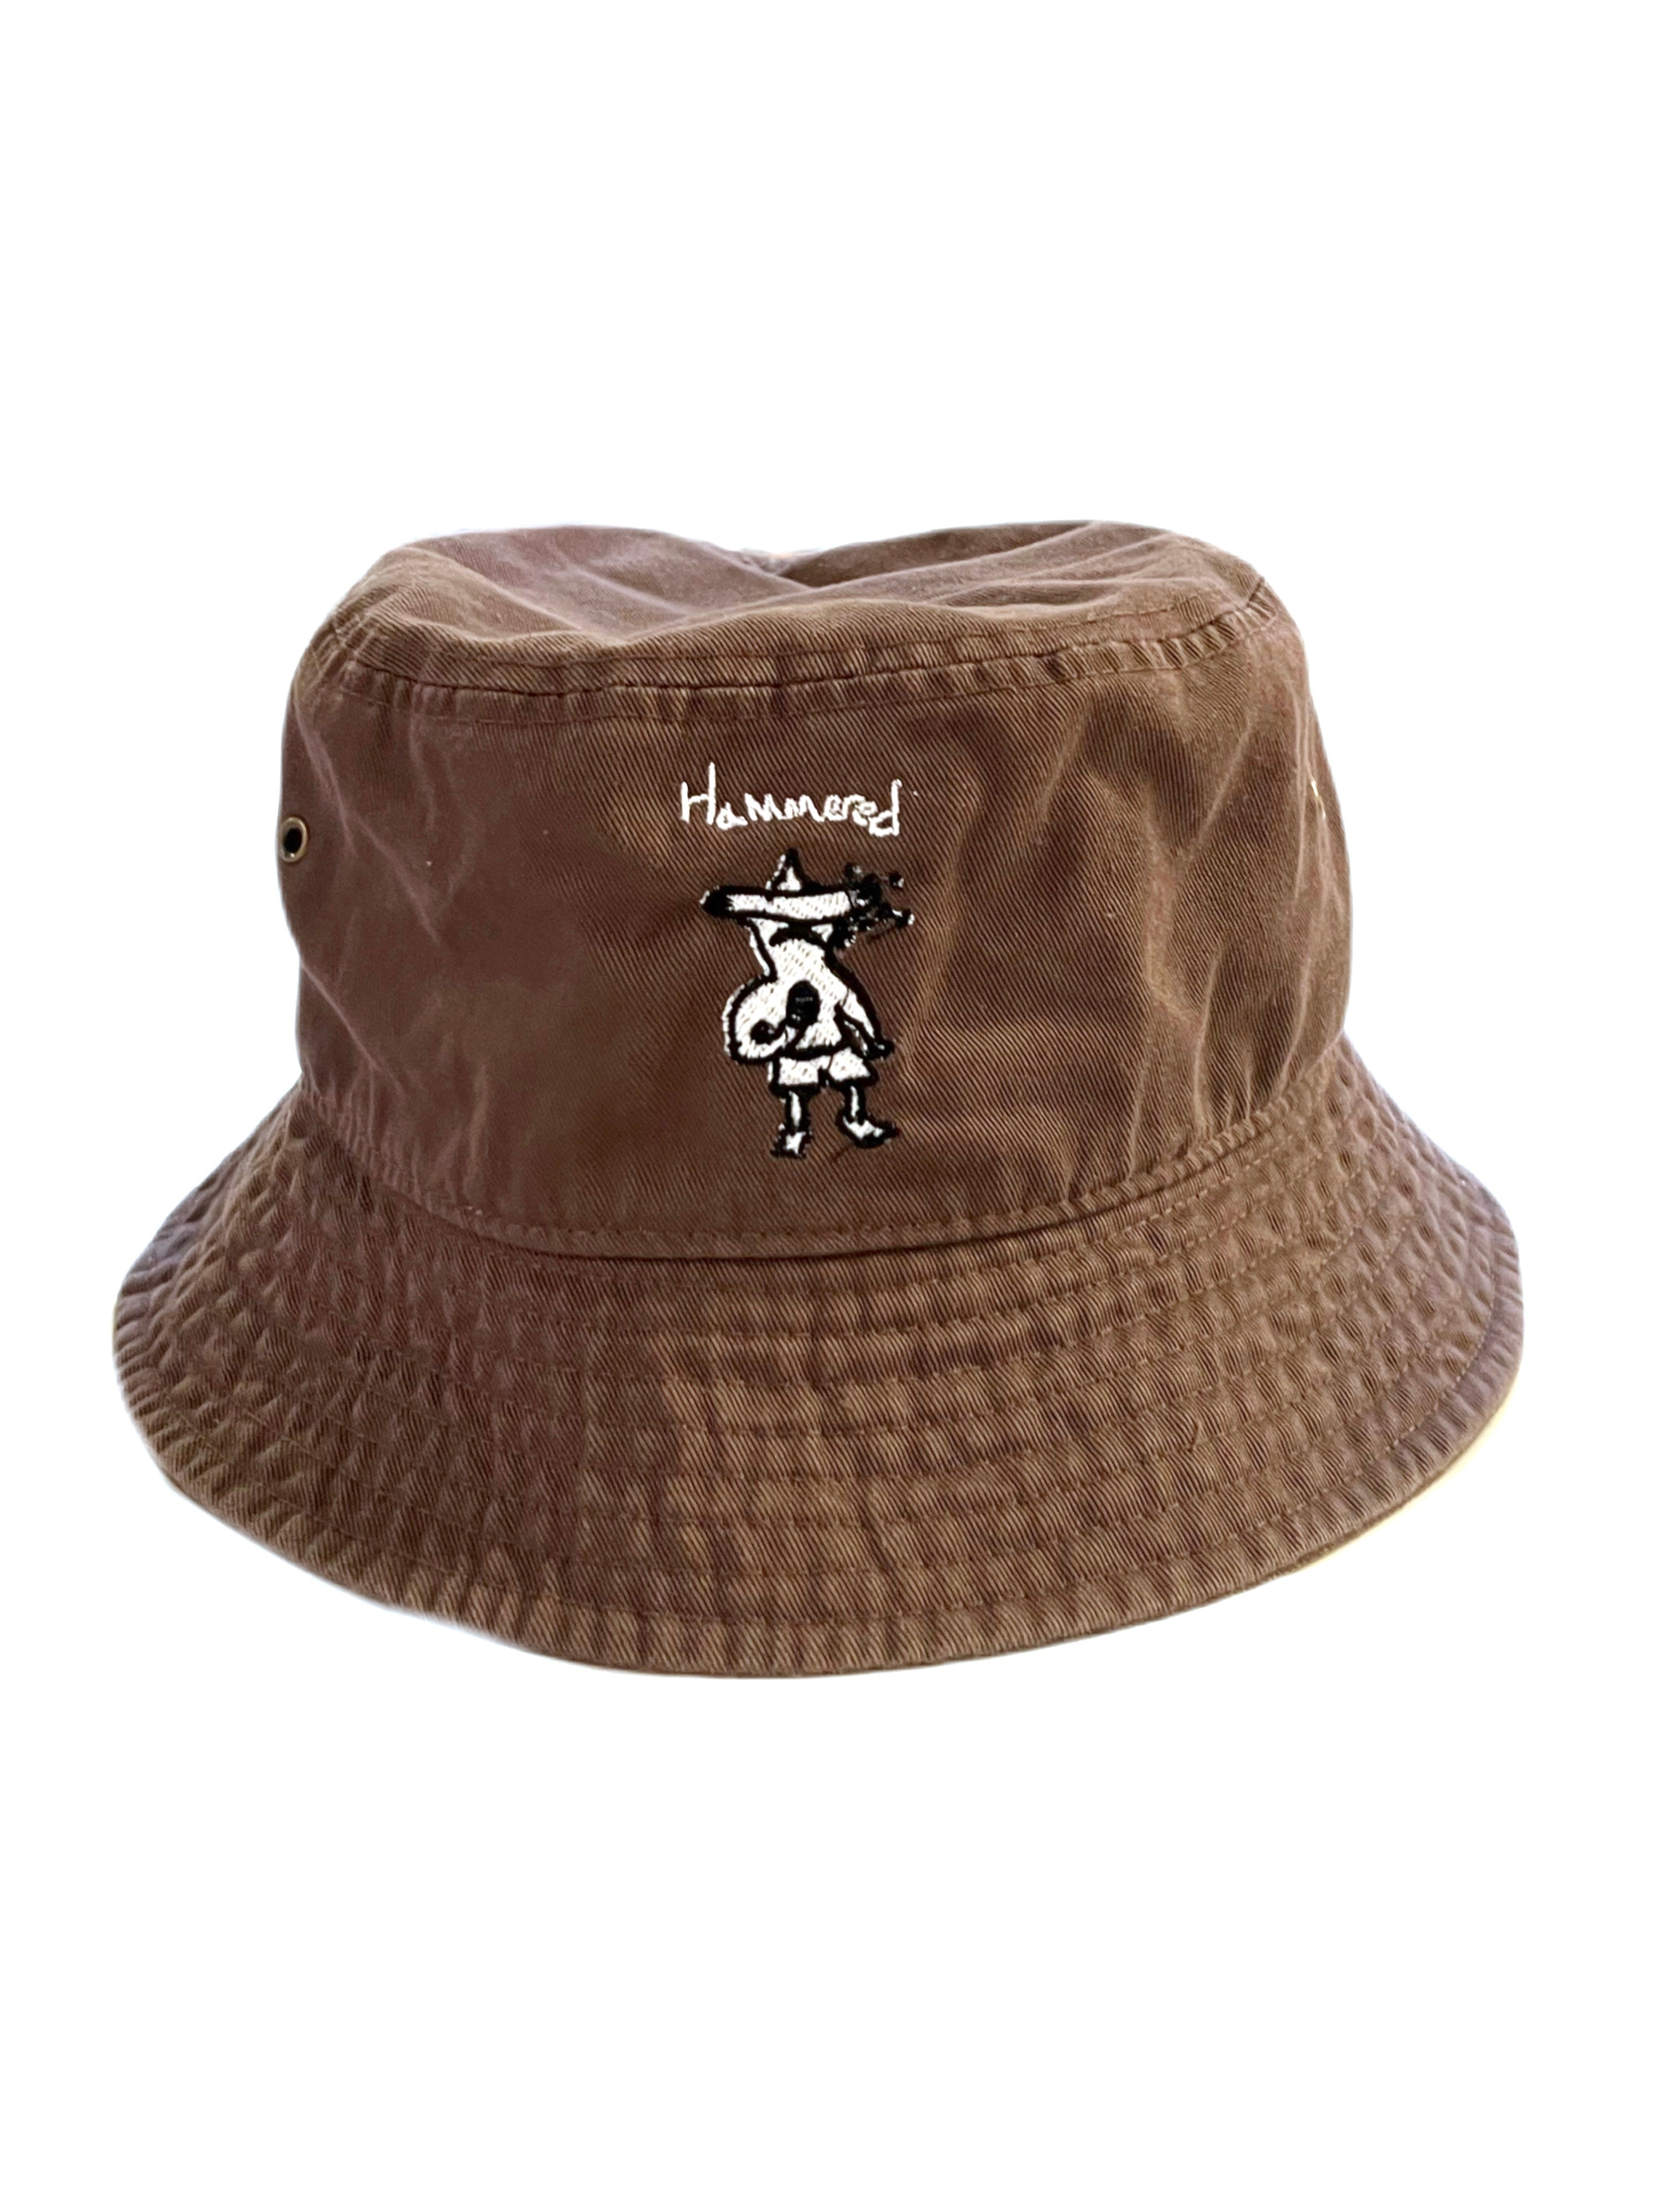 HAMMEREDHEAD BUCKET HAT